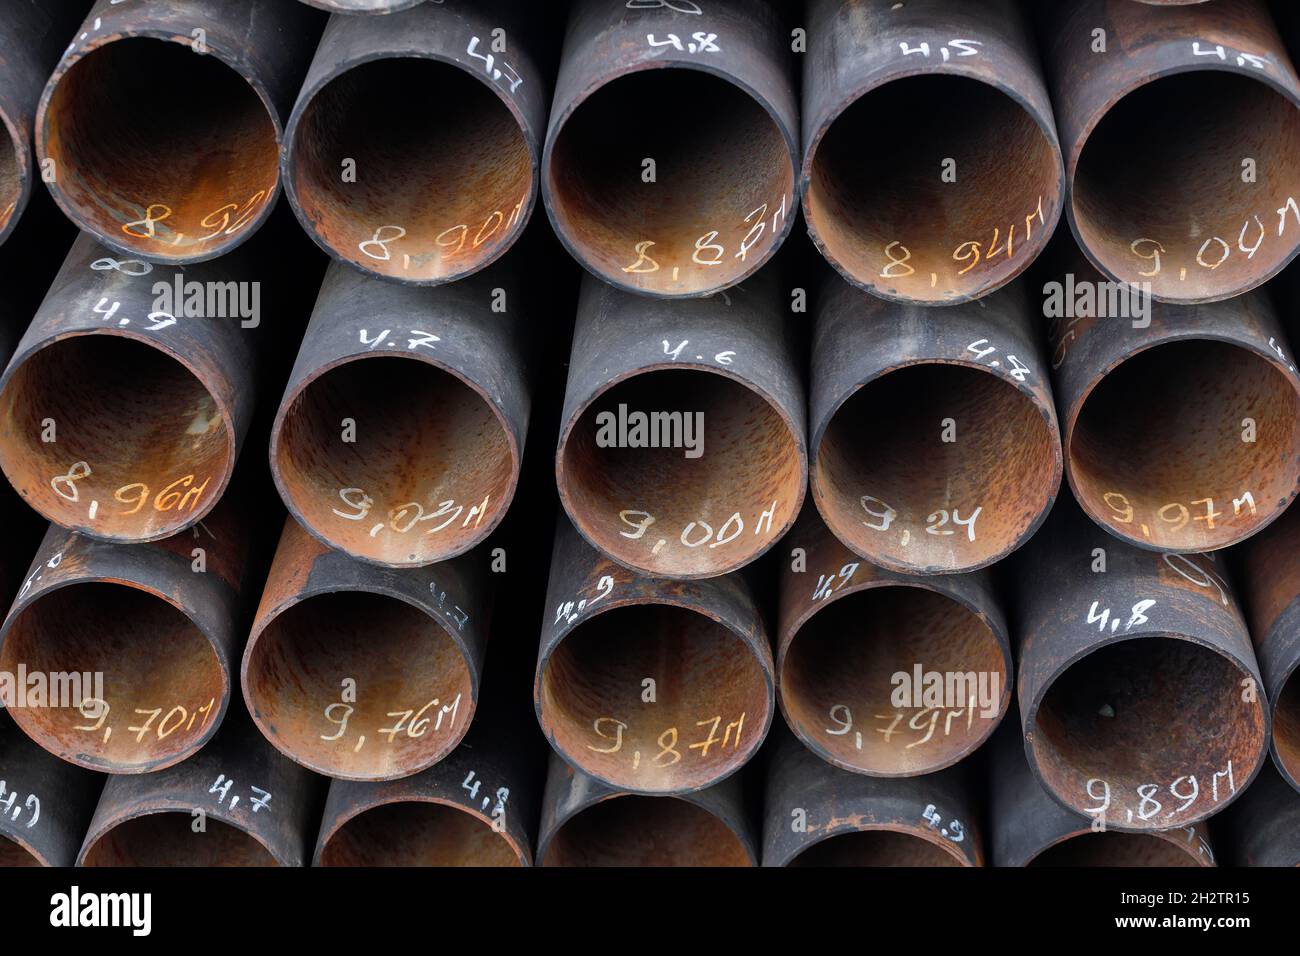 Les tuyaux maetalliques de même diamètre sont bien empilés.Vue des tuyaux depuis l'avant.Contexte pour le fournisseur de produits métalliques. Banque D'Images